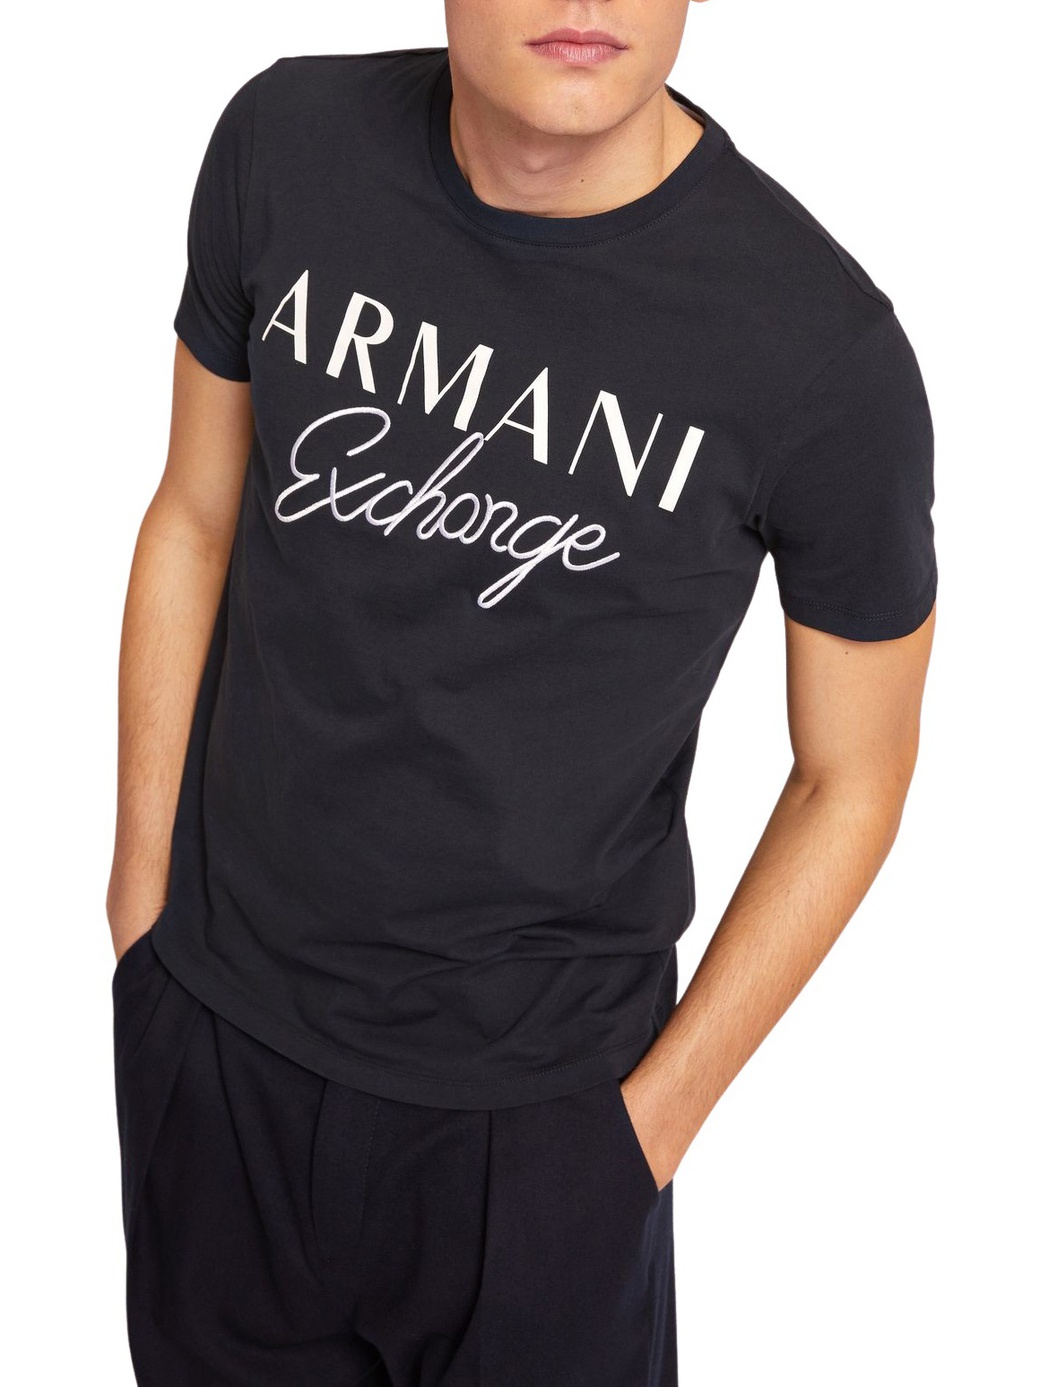 Футболка Armani Exchange с надписью 6zztds, черный фото